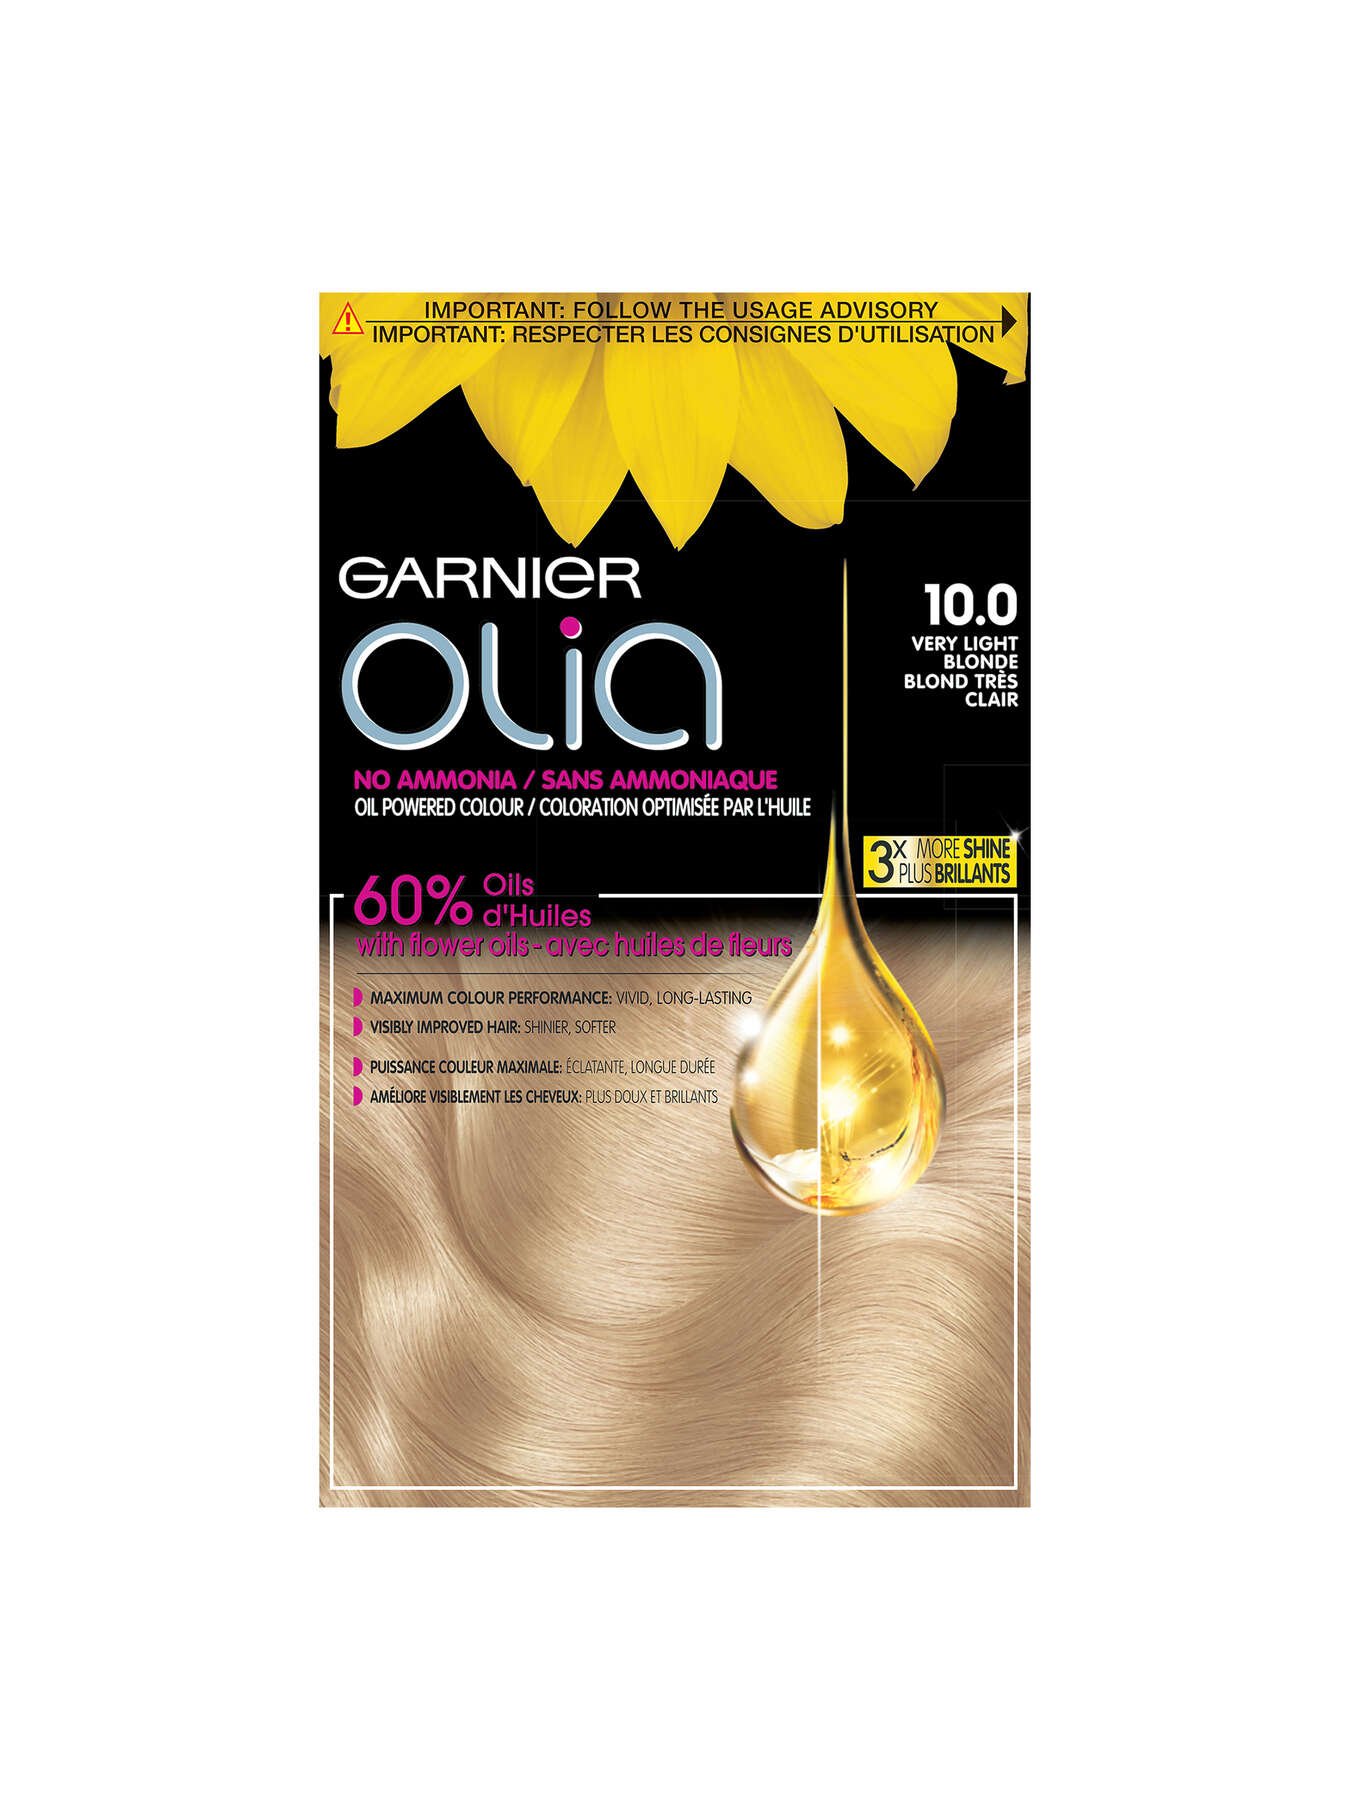 garnier hair dye olia 100 very light blonde 603084416523 t1